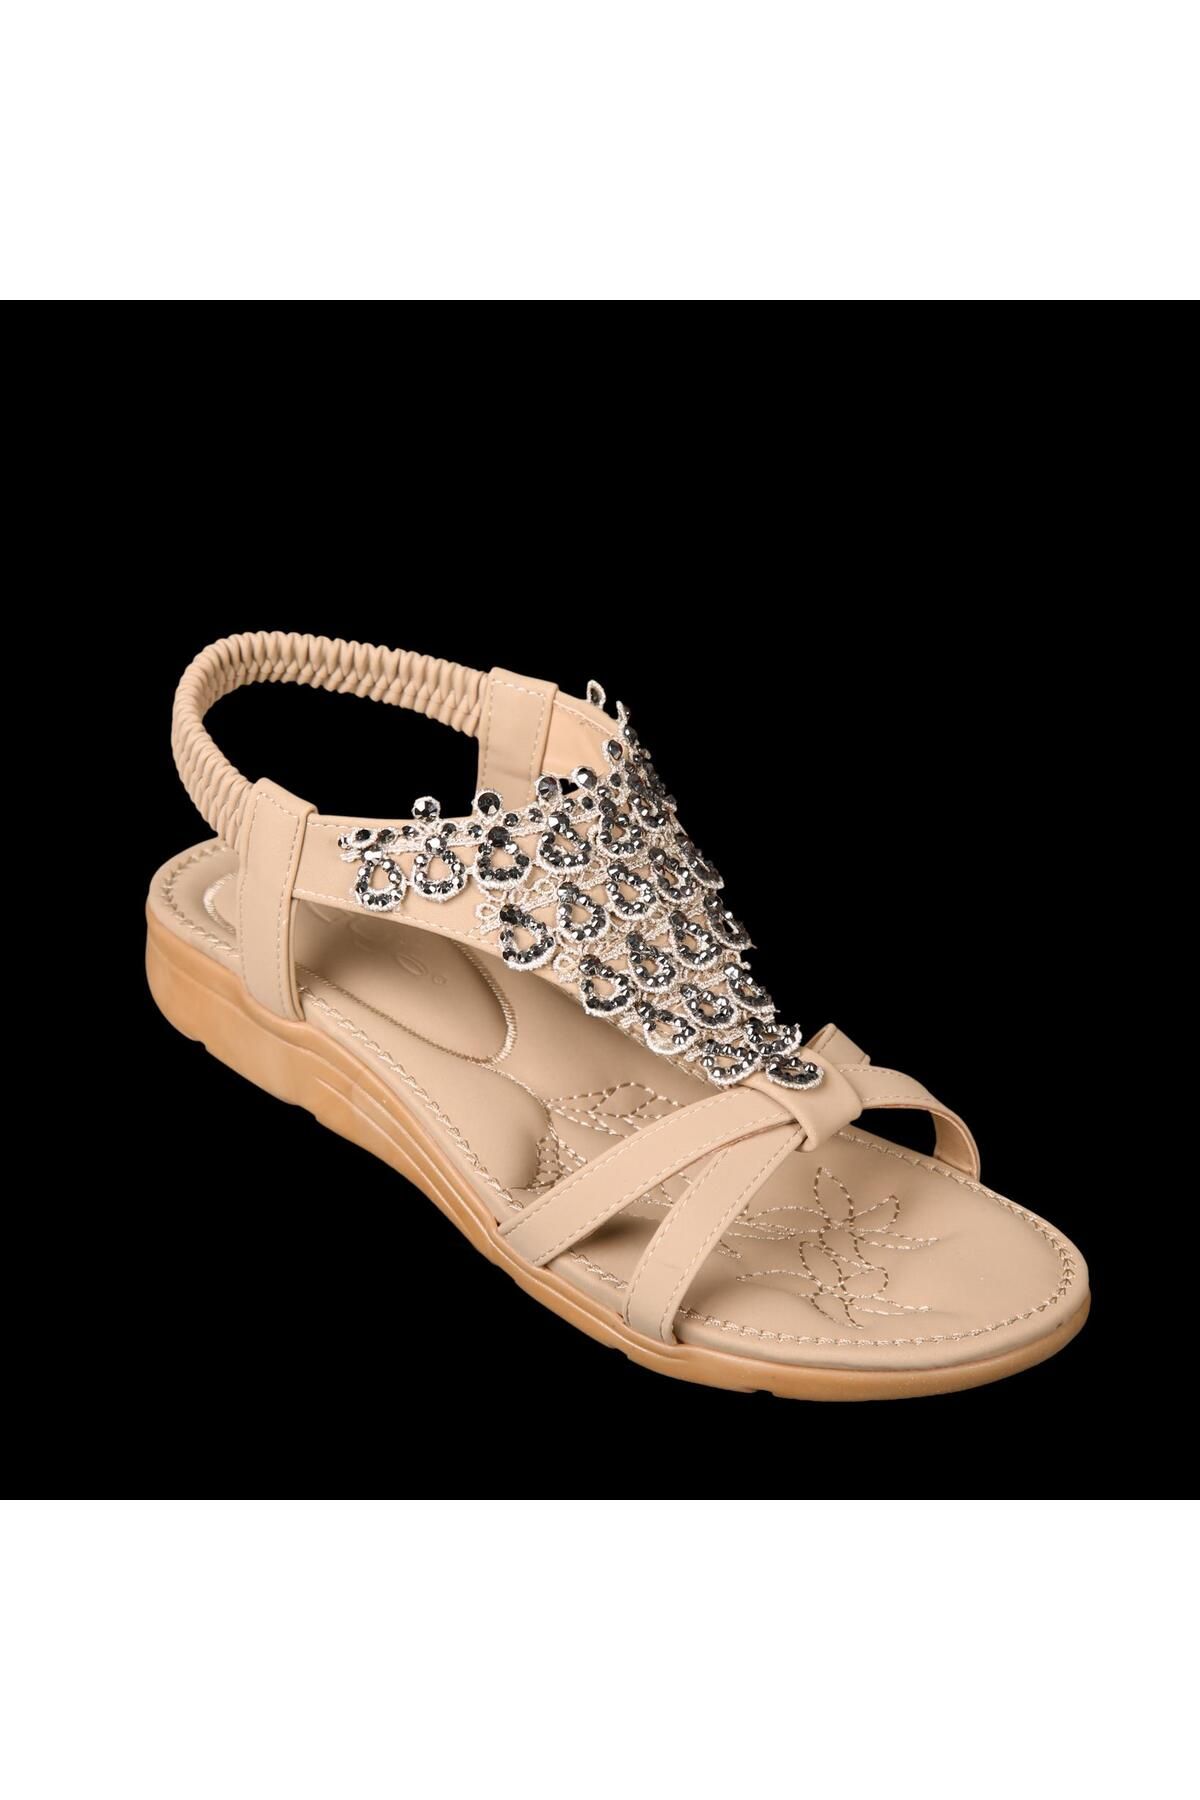 Guja 22y120-1 Kadın Sandalet